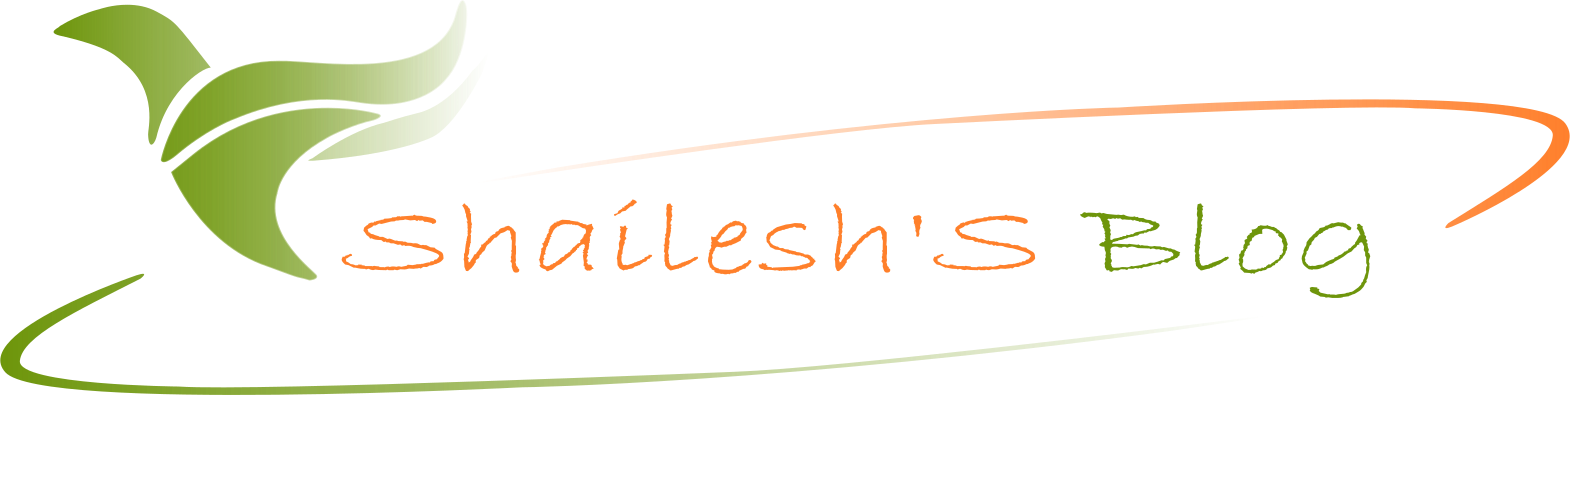 Shailesh' Blog